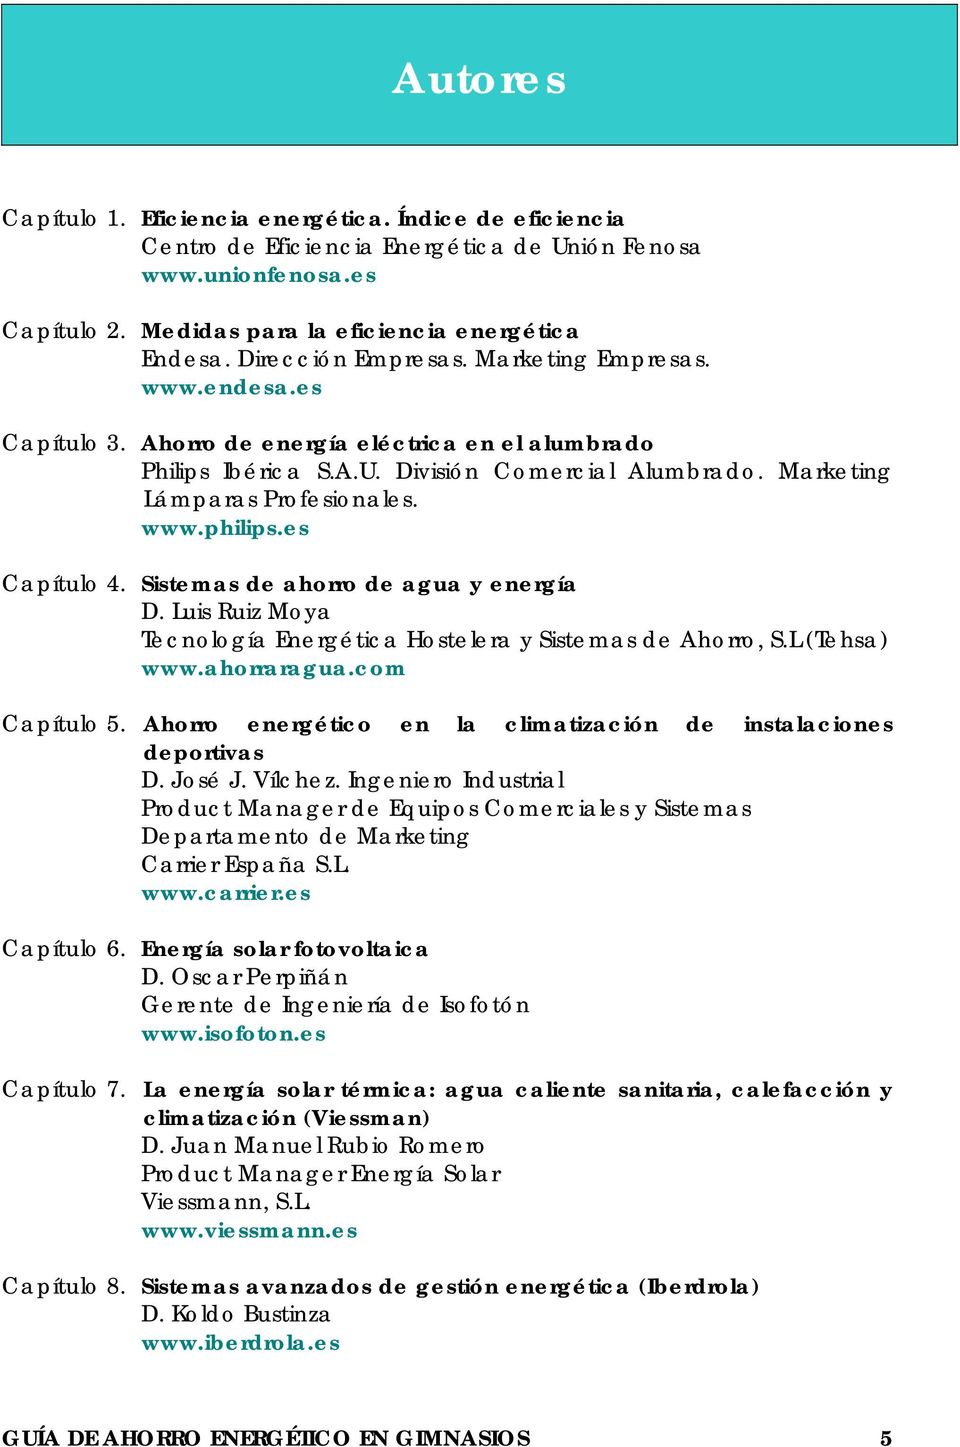 www.philips.es Capítulo 4. Sistemas de ahorro de agua y energía D. Luis Ruiz Moya Tecnología Energética Hostelera y Sistemas de Ahorro, S.L (Tehsa) www.ahorraragua.com Capítulo 5.